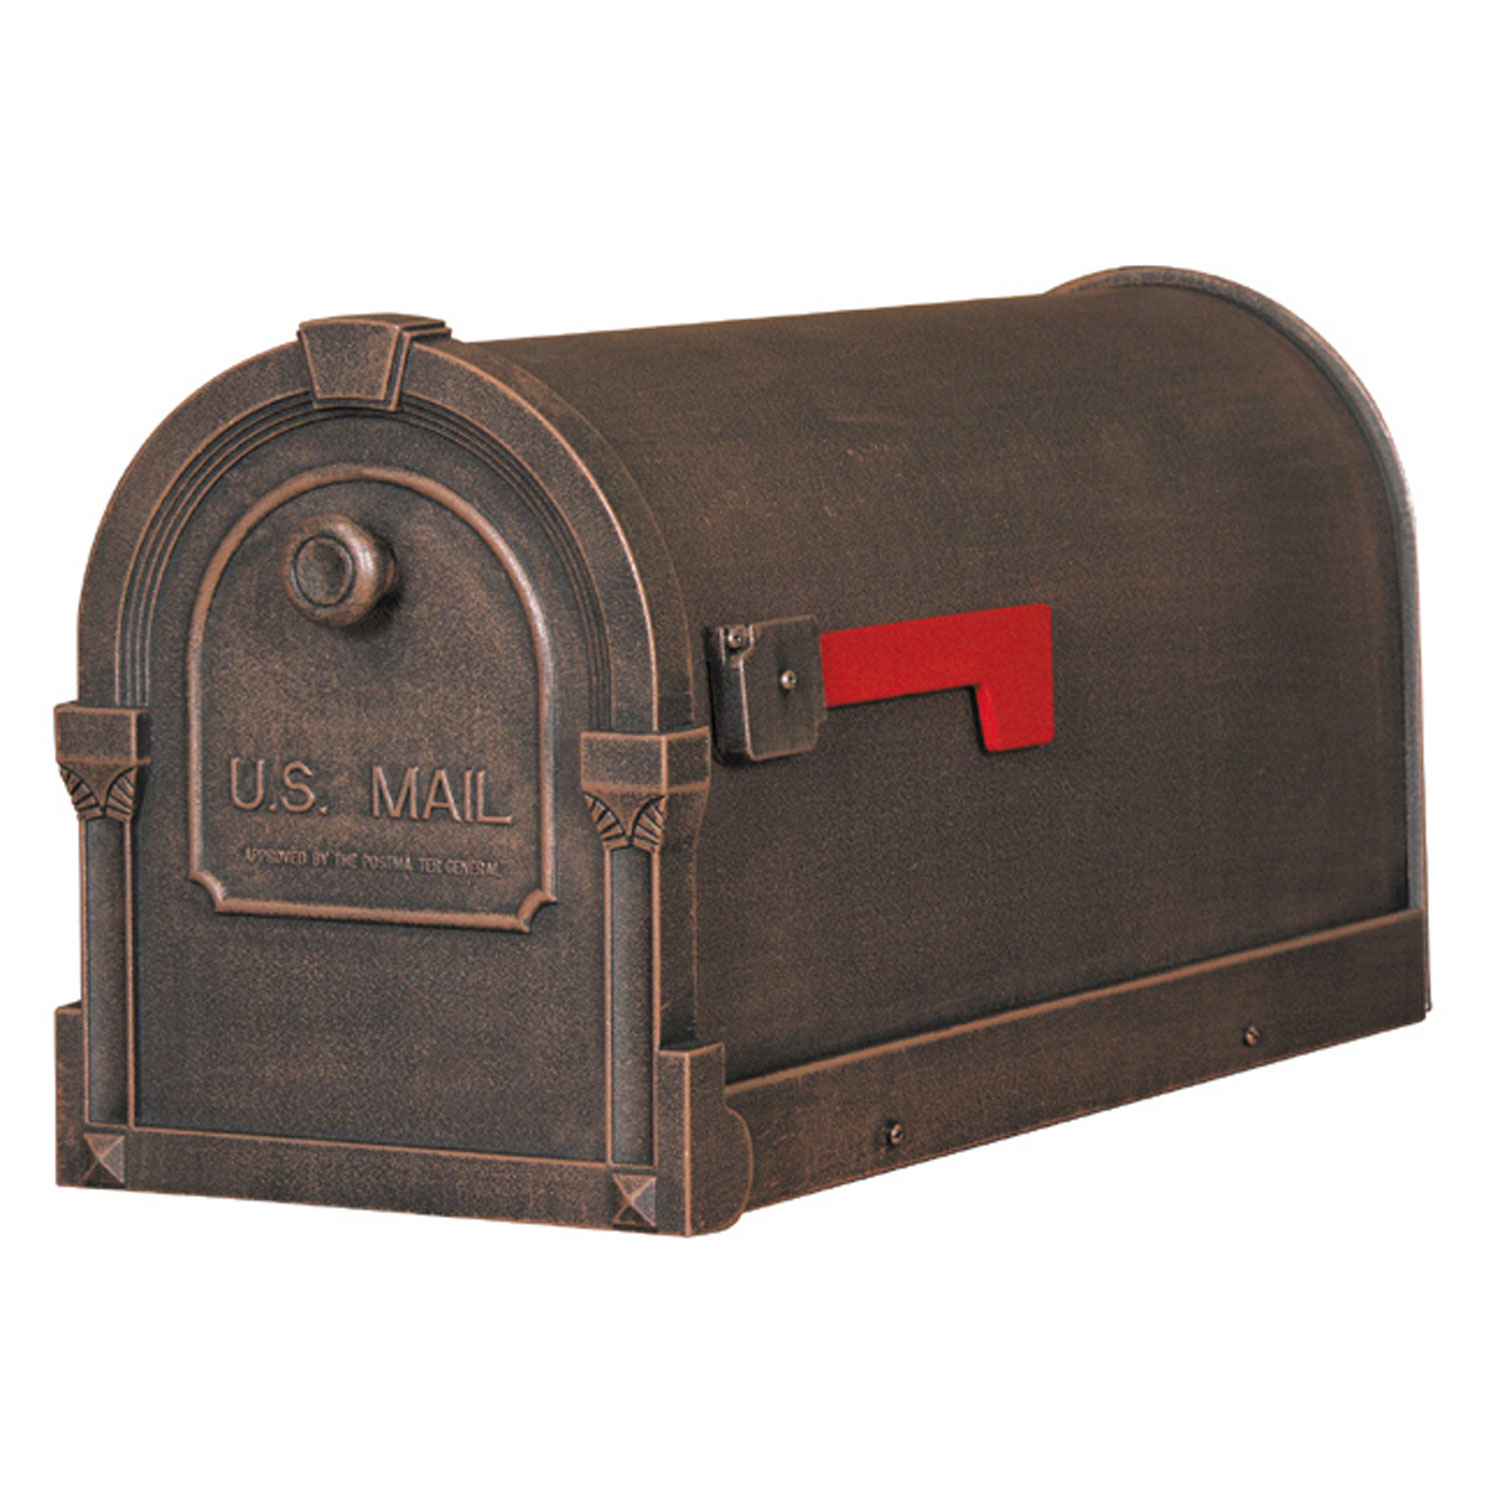 Post Mounted Mailboxes visual nav